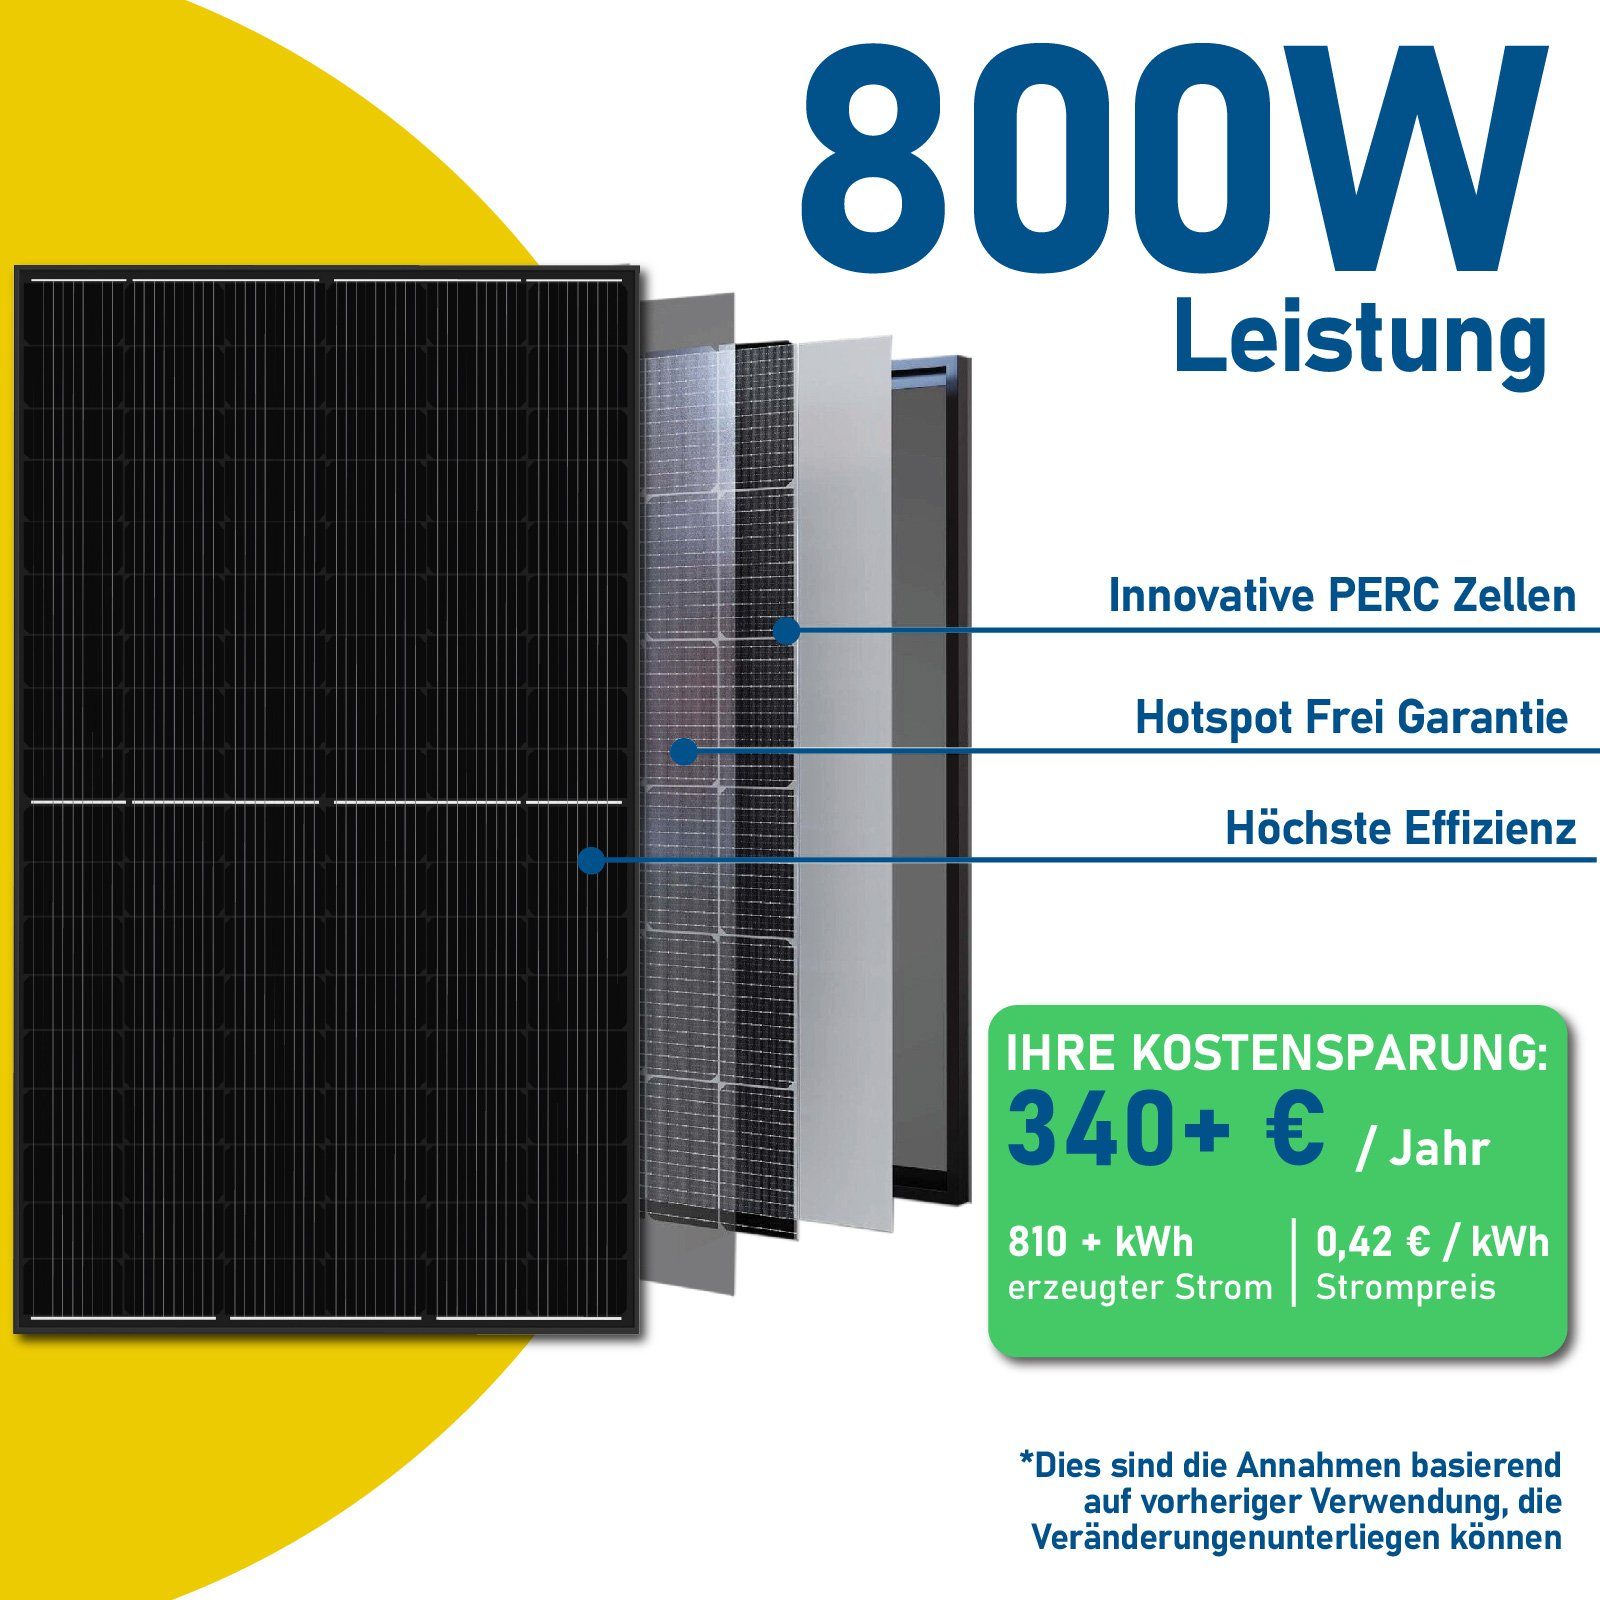 Ziegeldach Mit Balkonkraftwerk, 800W EPP.Solar PV-Montage, Hypontech WIFI 800W Upgradefähiger Wechselrichter Solaranlage Halterung, Photovoltaik